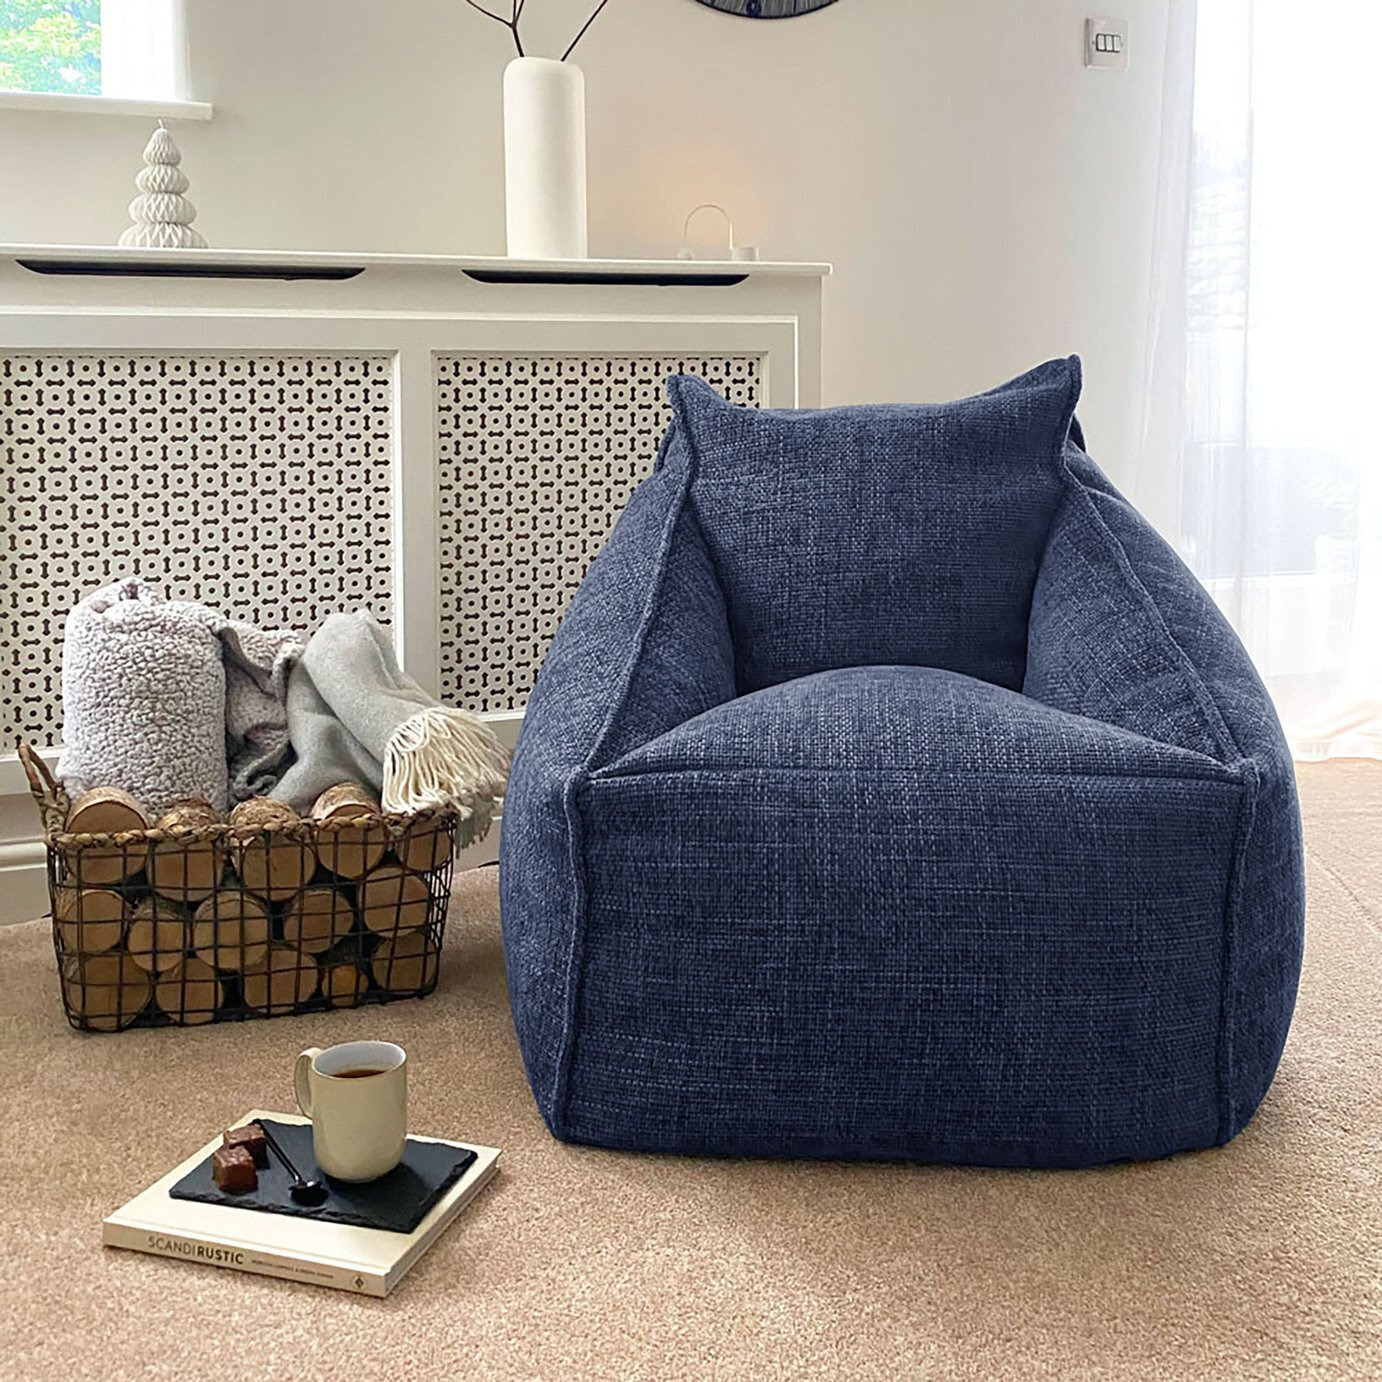 rucomfy Fabric Bean Bag Chair - Marine Blue - image 1